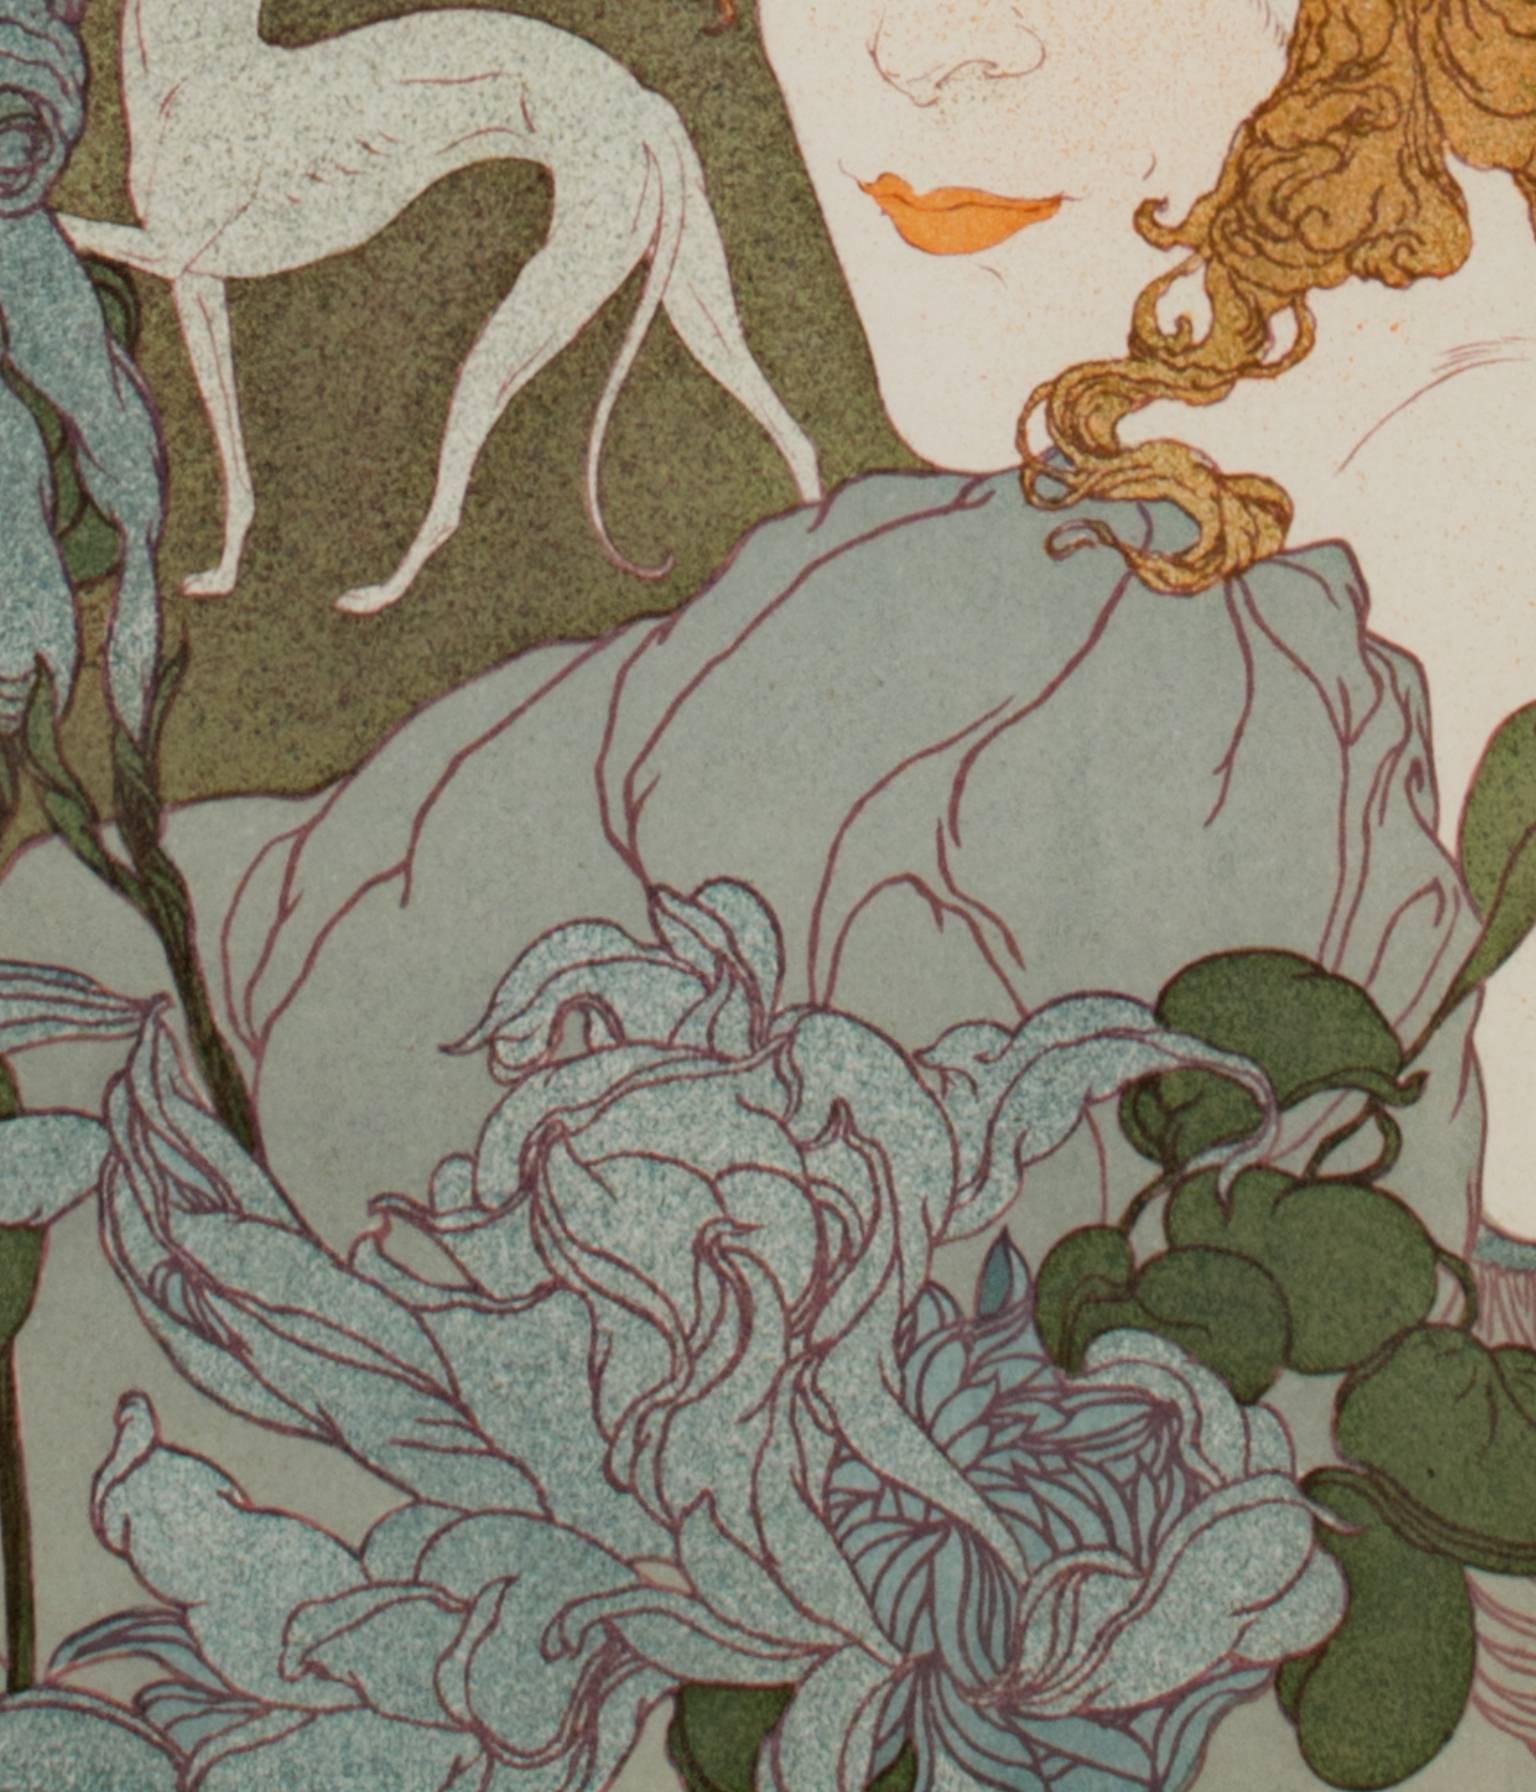 Original Lithograph Signed Art Nouveau 1800s Landscape Romantic Figure Floral For Sale 1